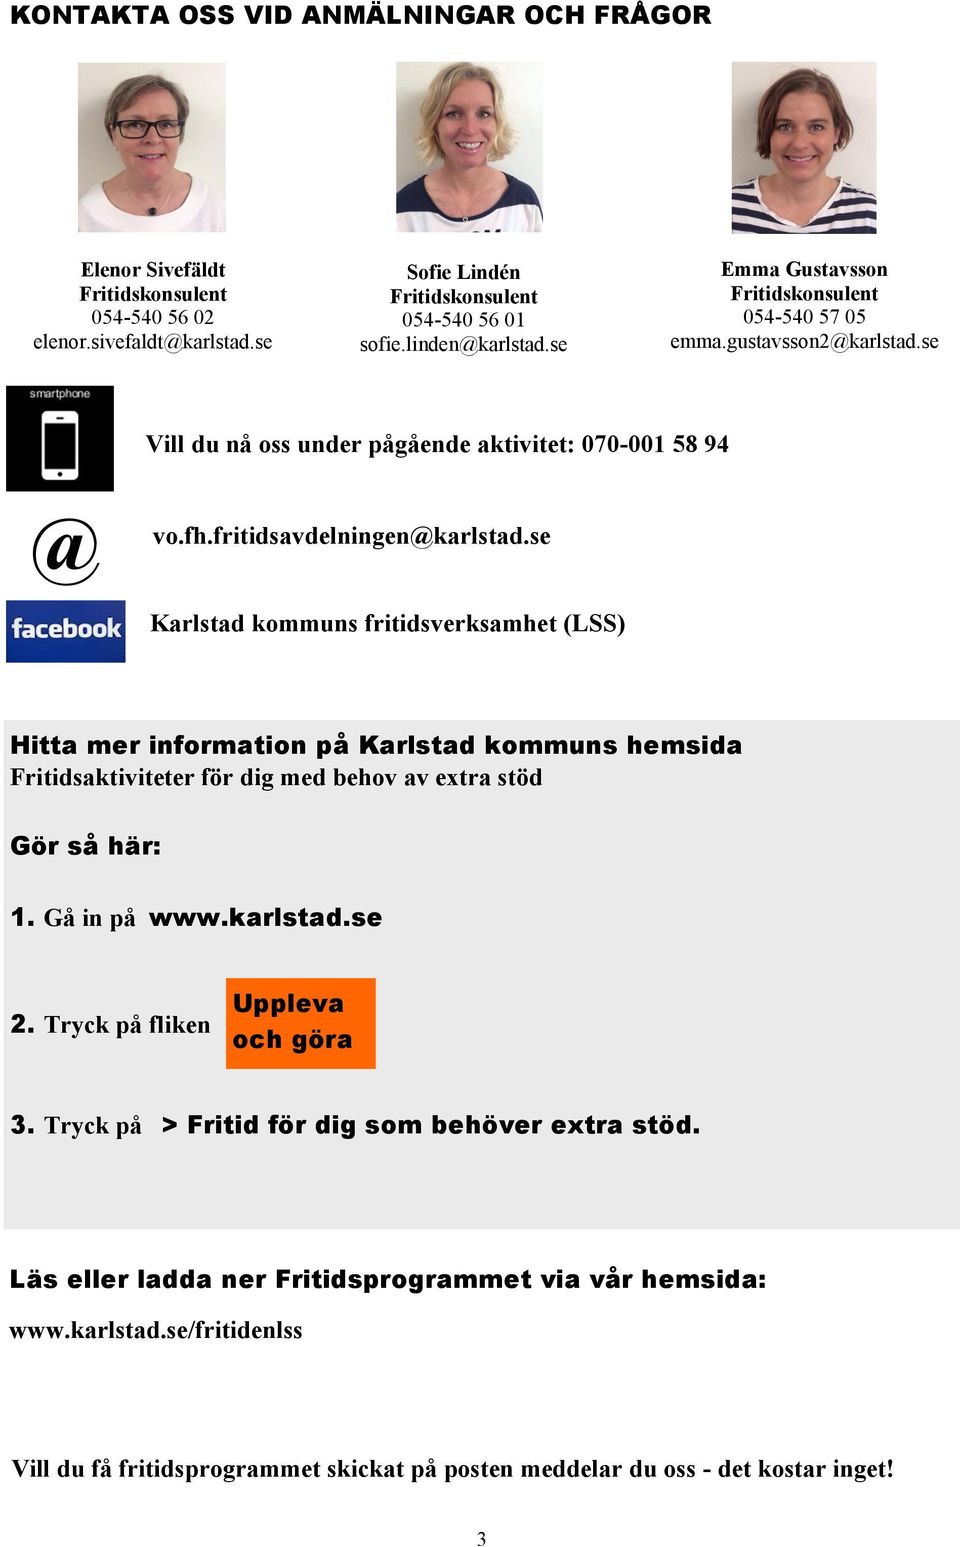 se Karlstad kommuns fritidsverksamhet (LSS) Hitta mer information på Karlstad kommuns hemsida Fritidsaktiviteter för dig med behov av extra stöd Gör så här: 1. Gå in på www.karlstad.se 2.